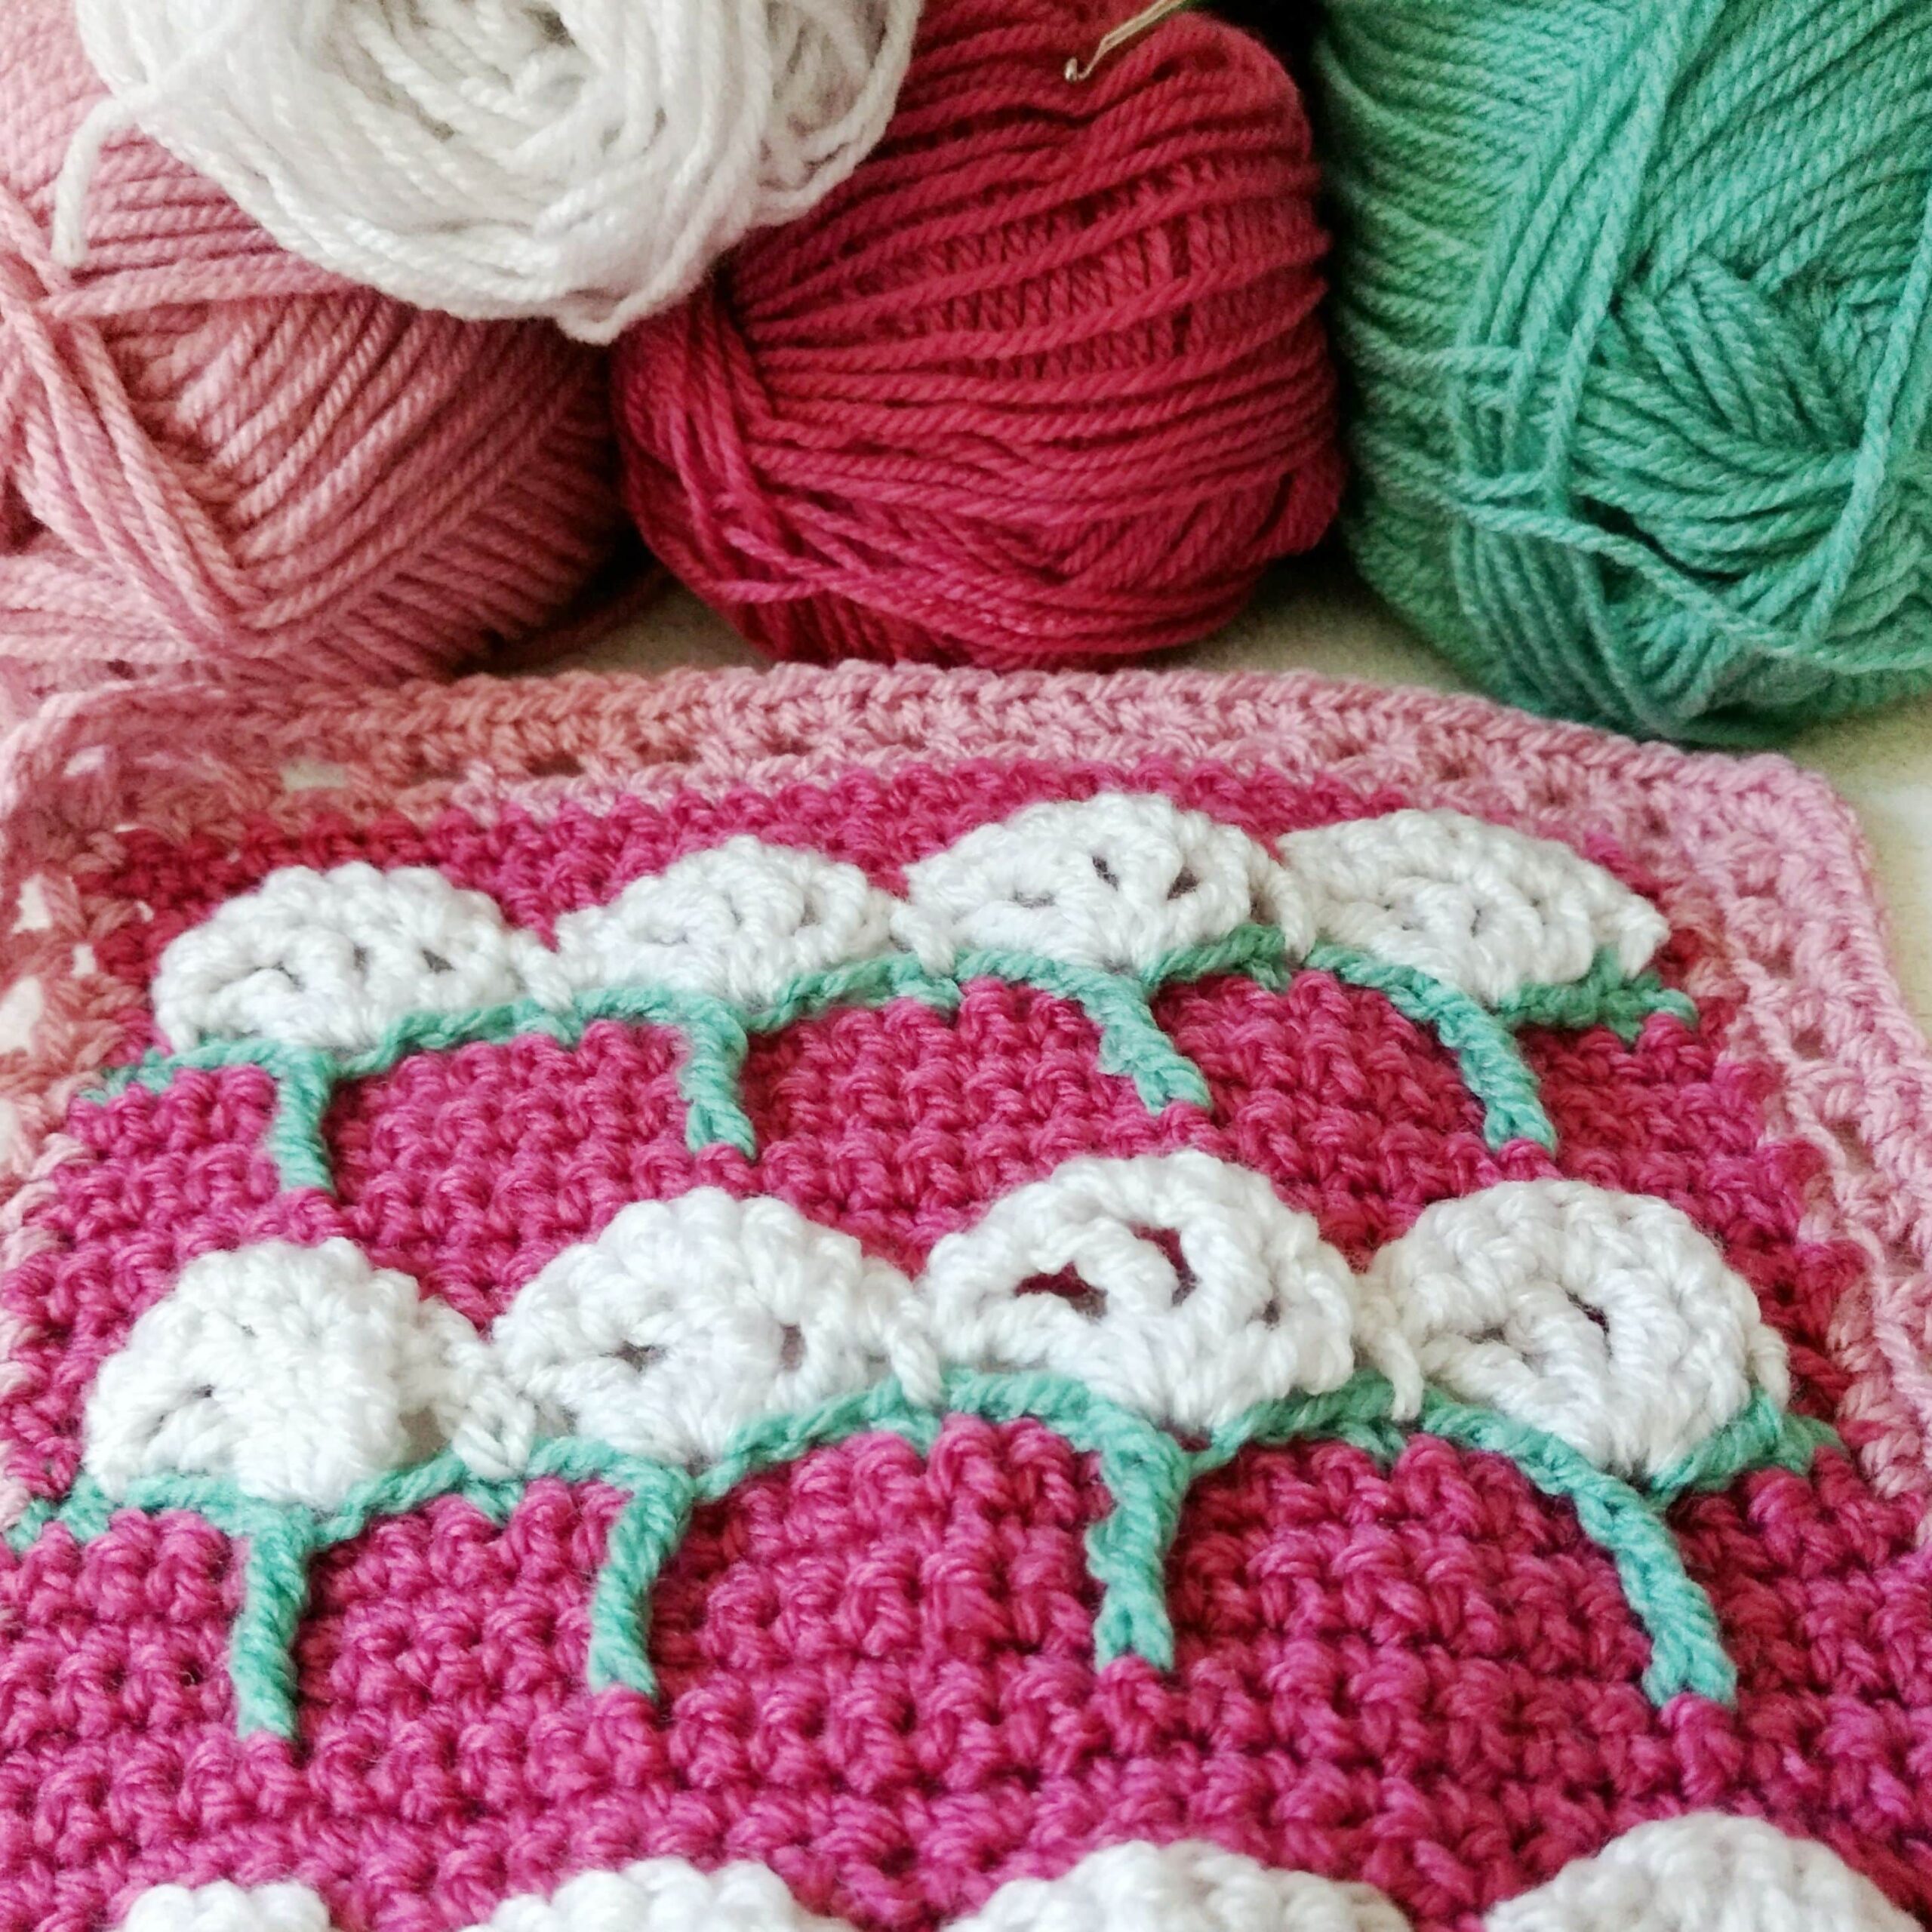 Cow Parsley Square - Free crochet pattern - Crochet wild flowers - crochet cloudberry